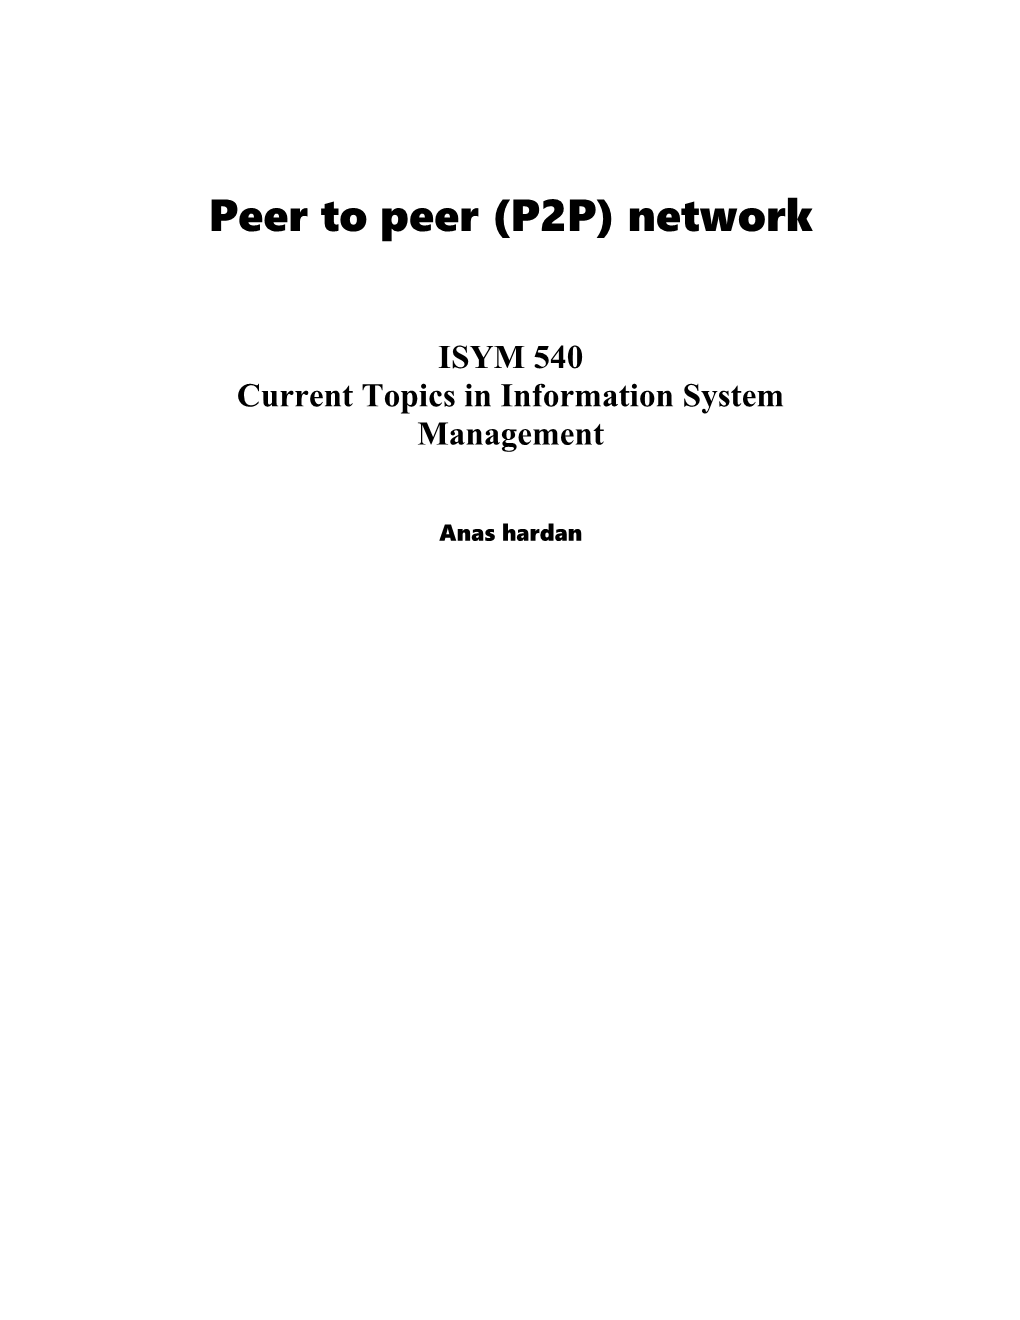 Peer to Peer (P2P) Network